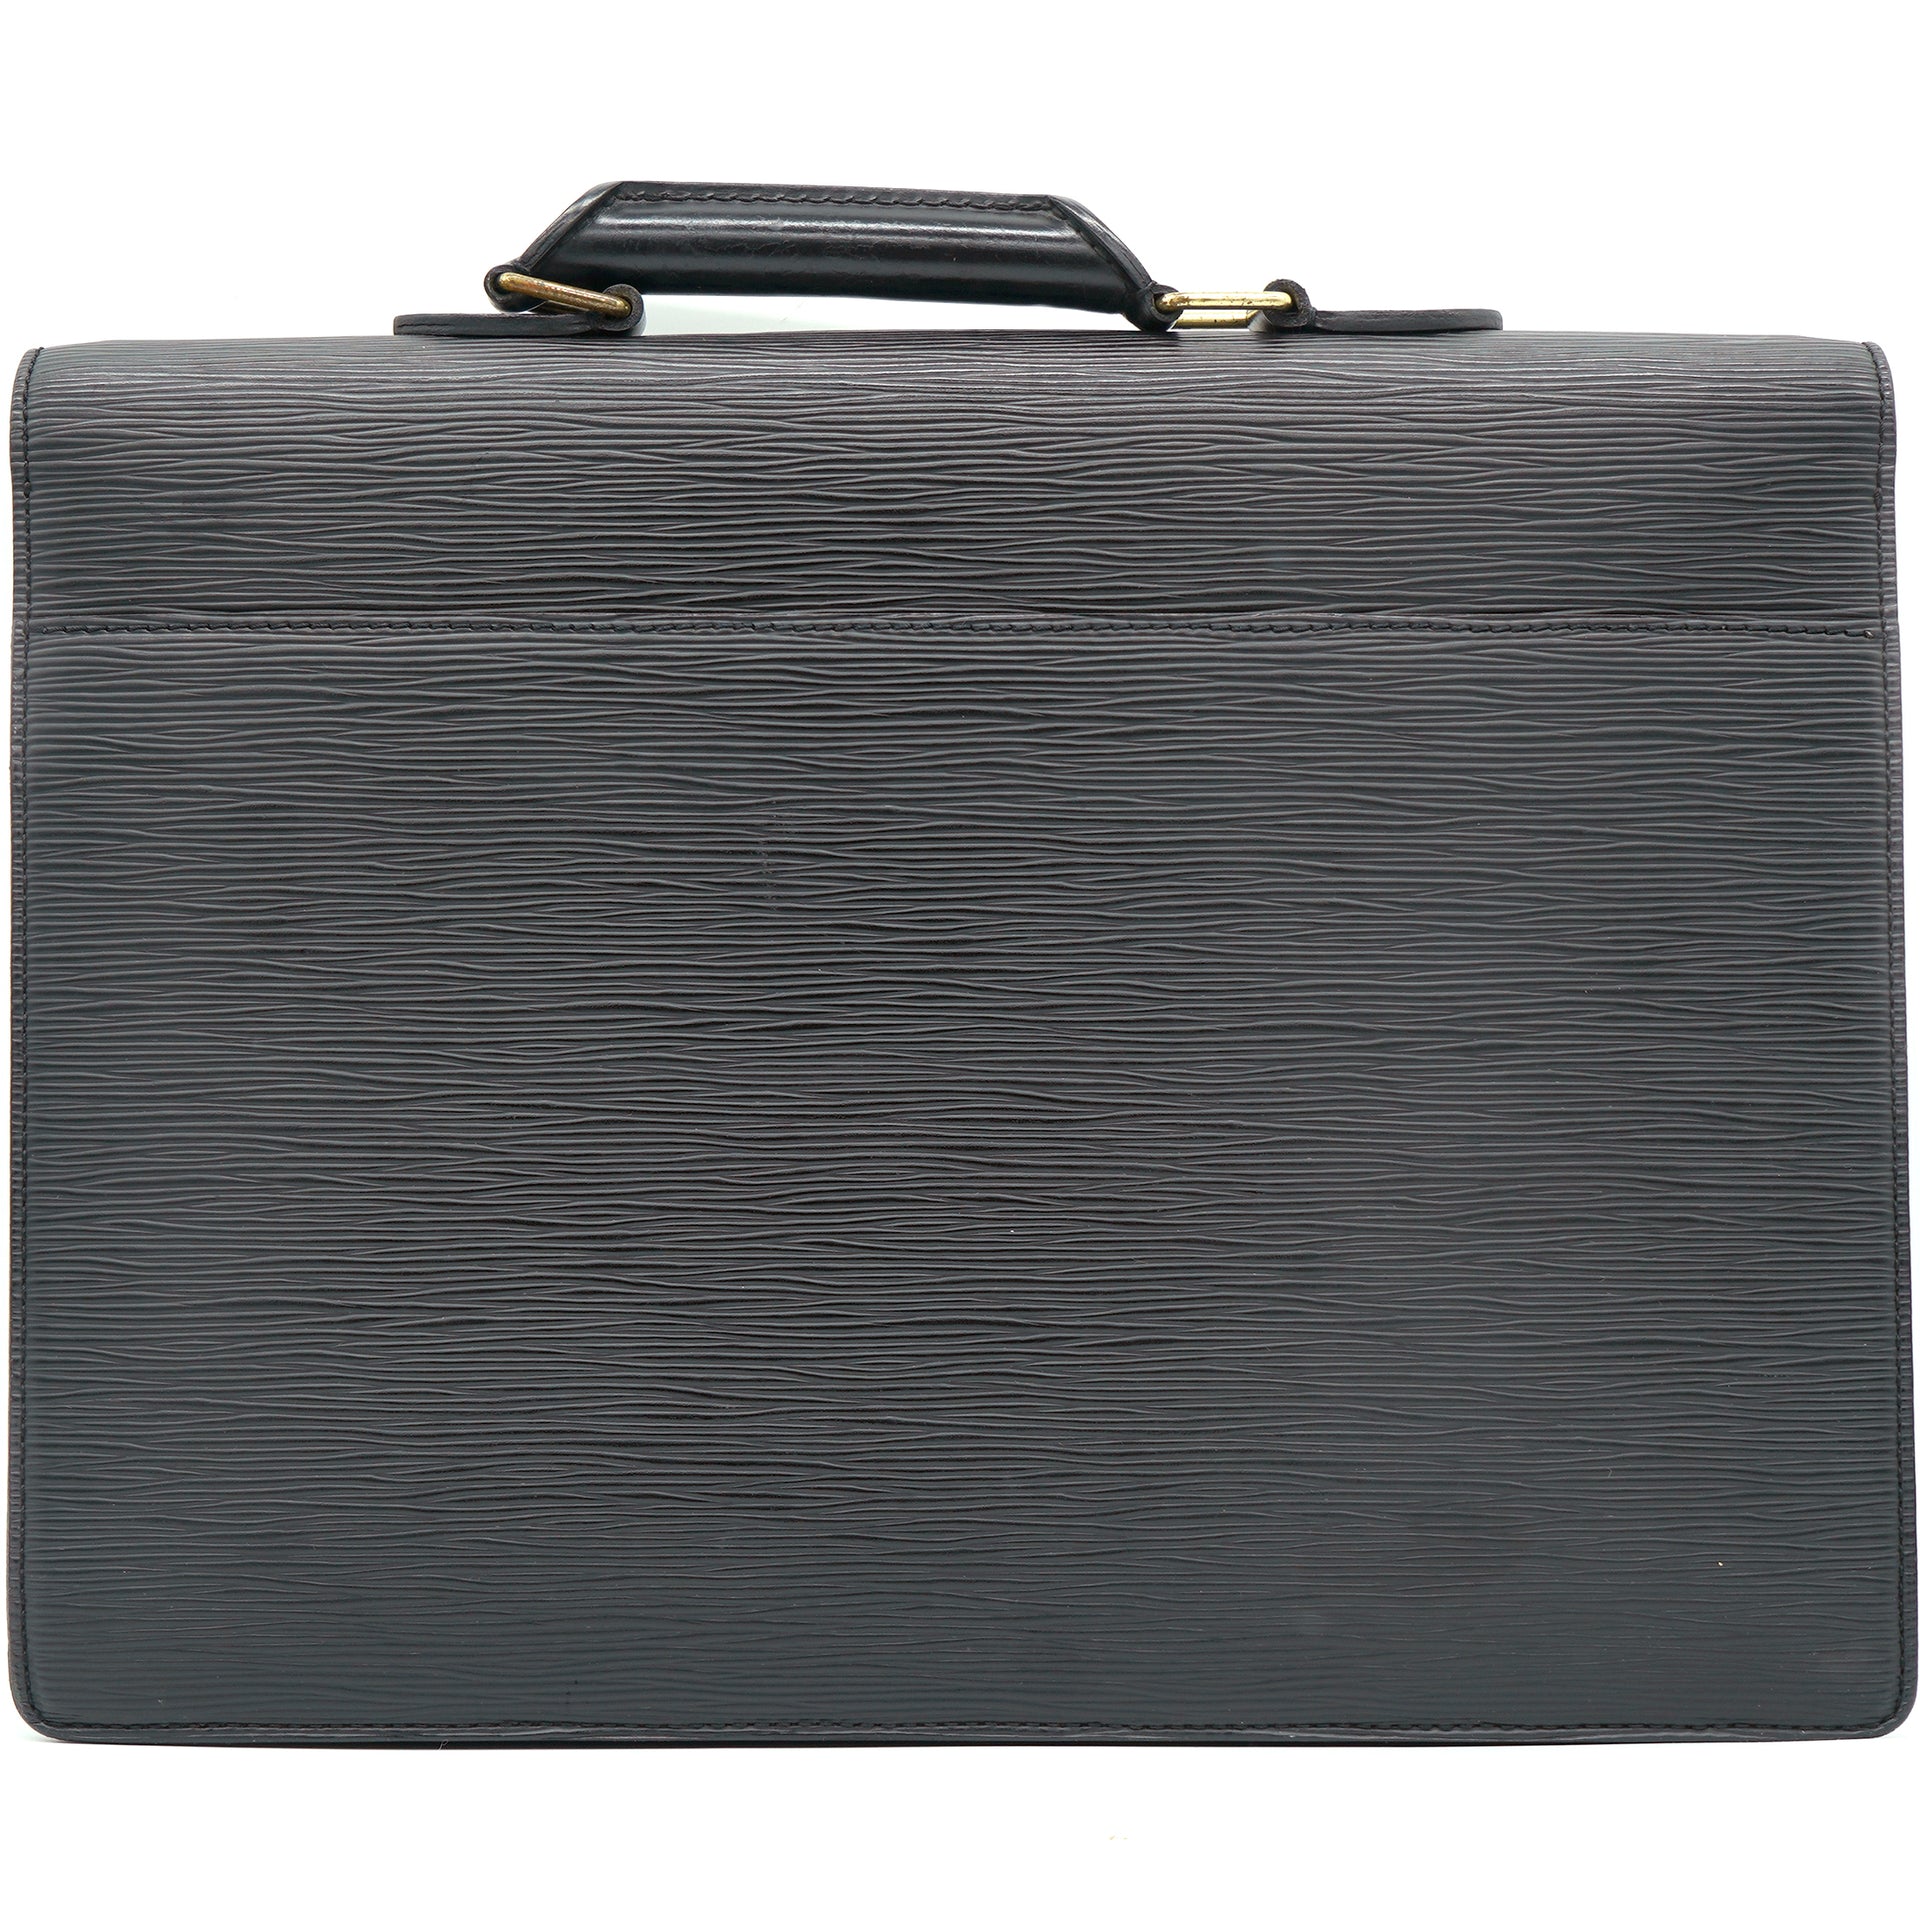 LOUIS VUITTON Business bag M54412 Cerviet ambassador Epi Leather